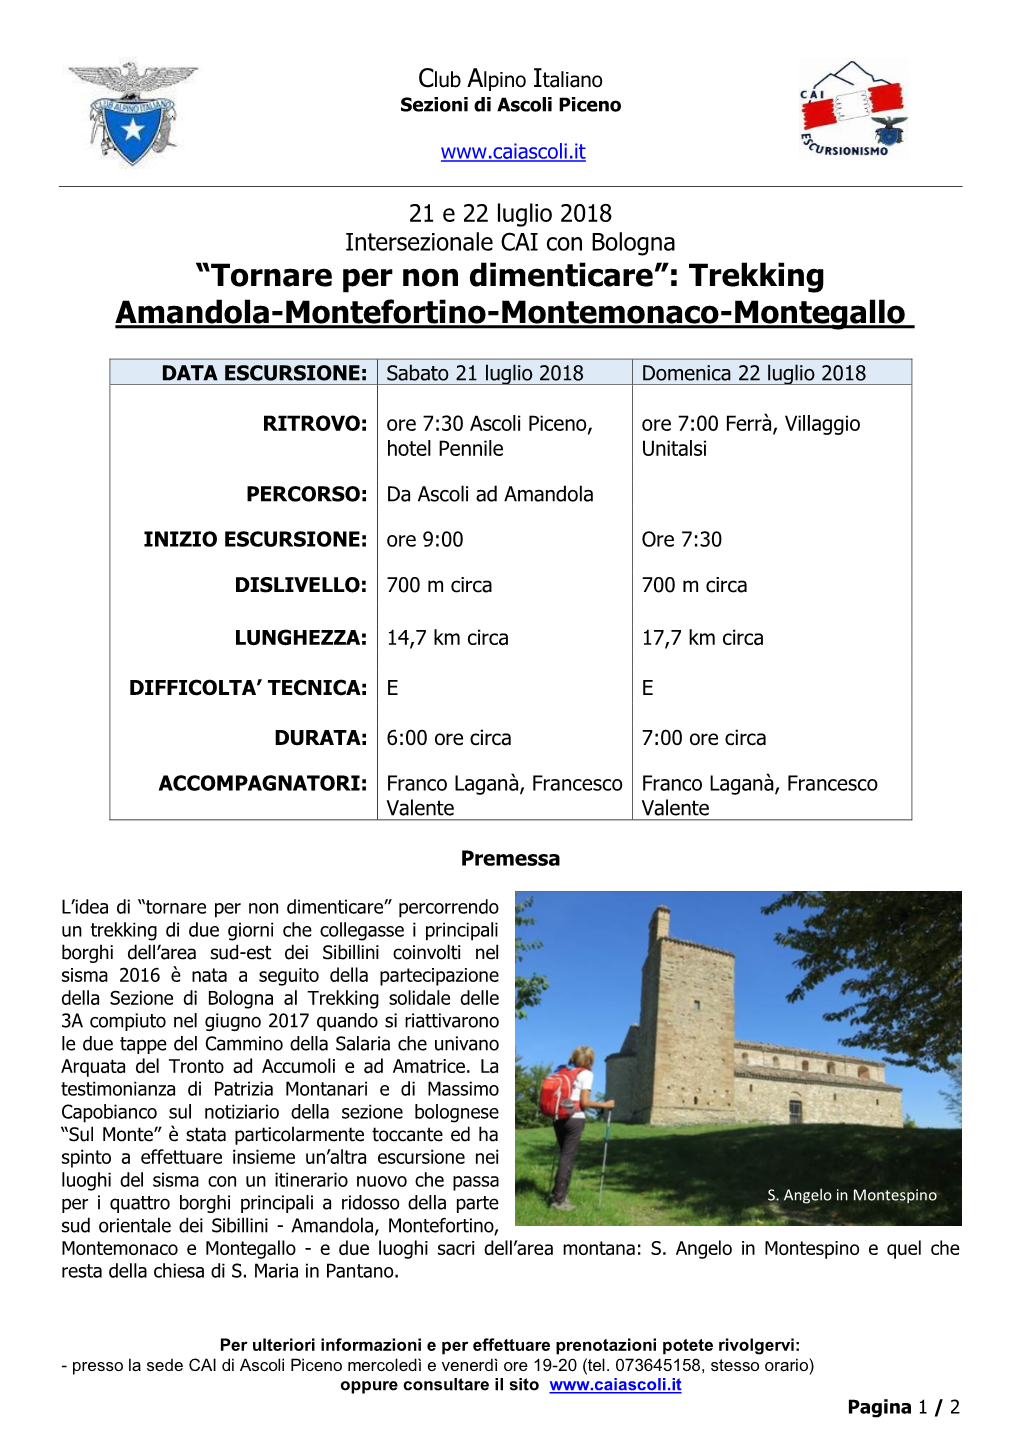 “Tornare Per Non Dimenticare”: Trekking Amandola-Montefortino-Montemonaco-Montegallo